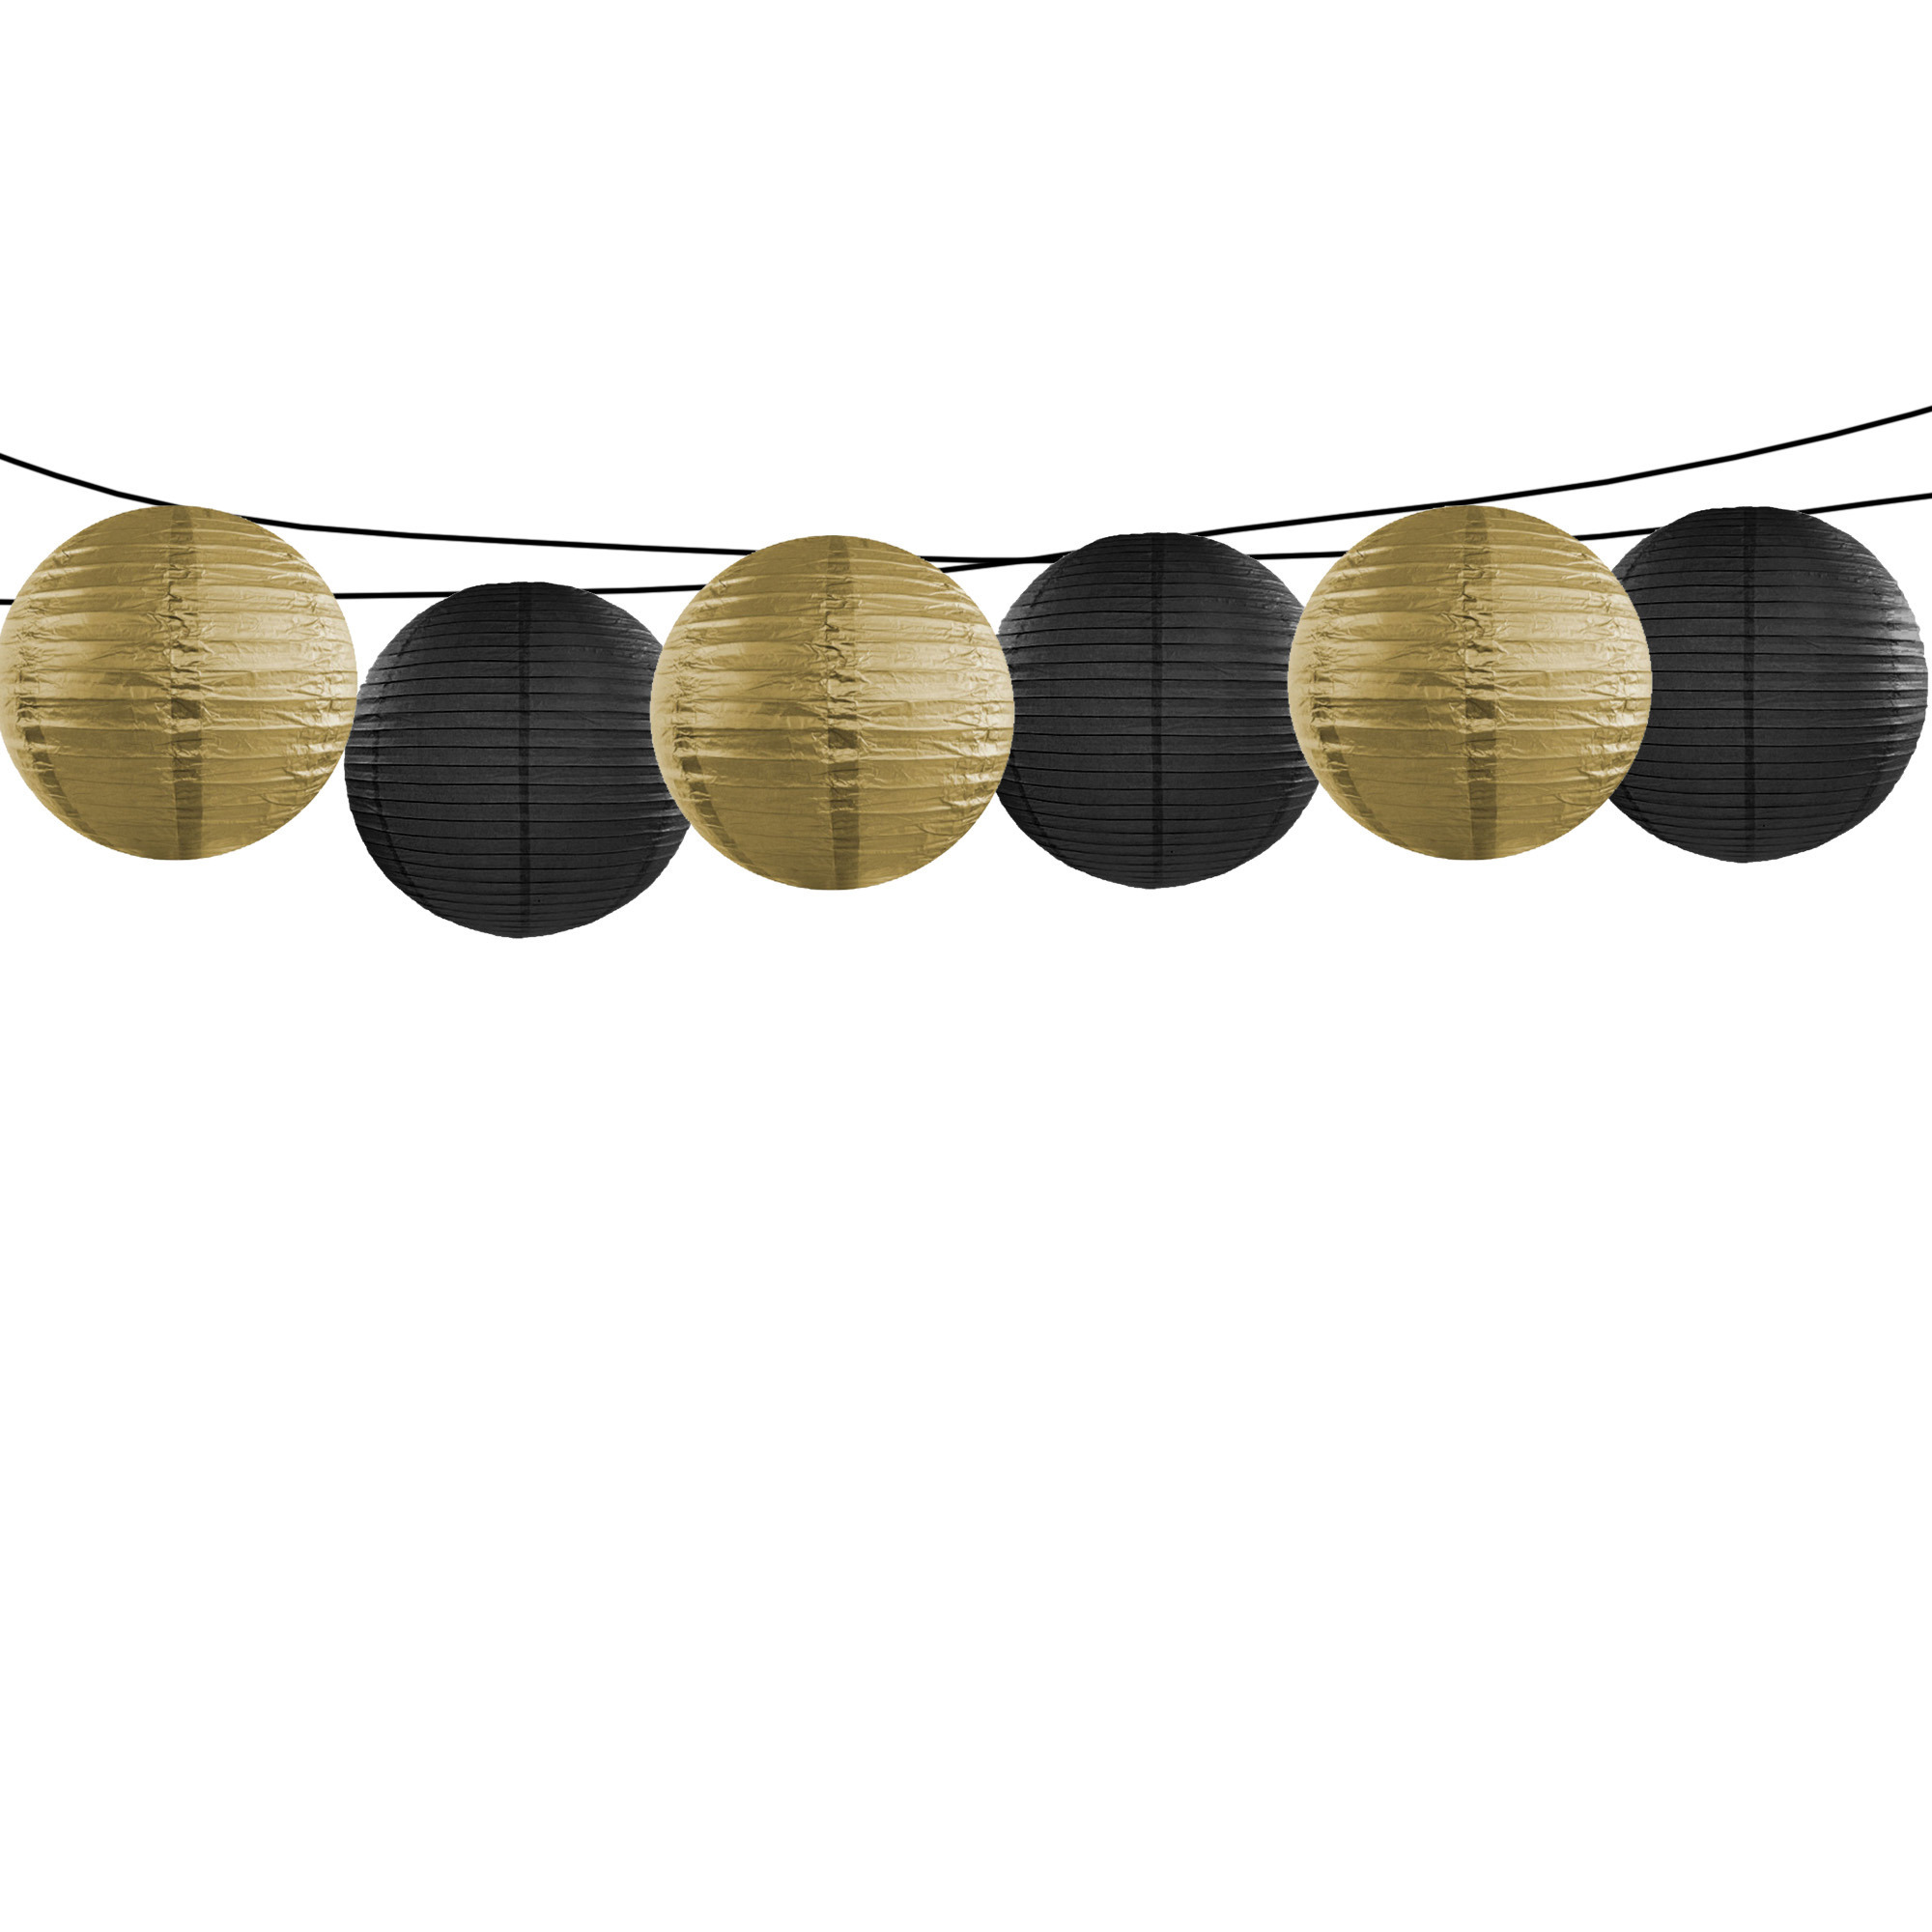 Feest-Tuin versiering 6x stuks luxe bol-vorm lampionnen zwart en goud dia 35 cm